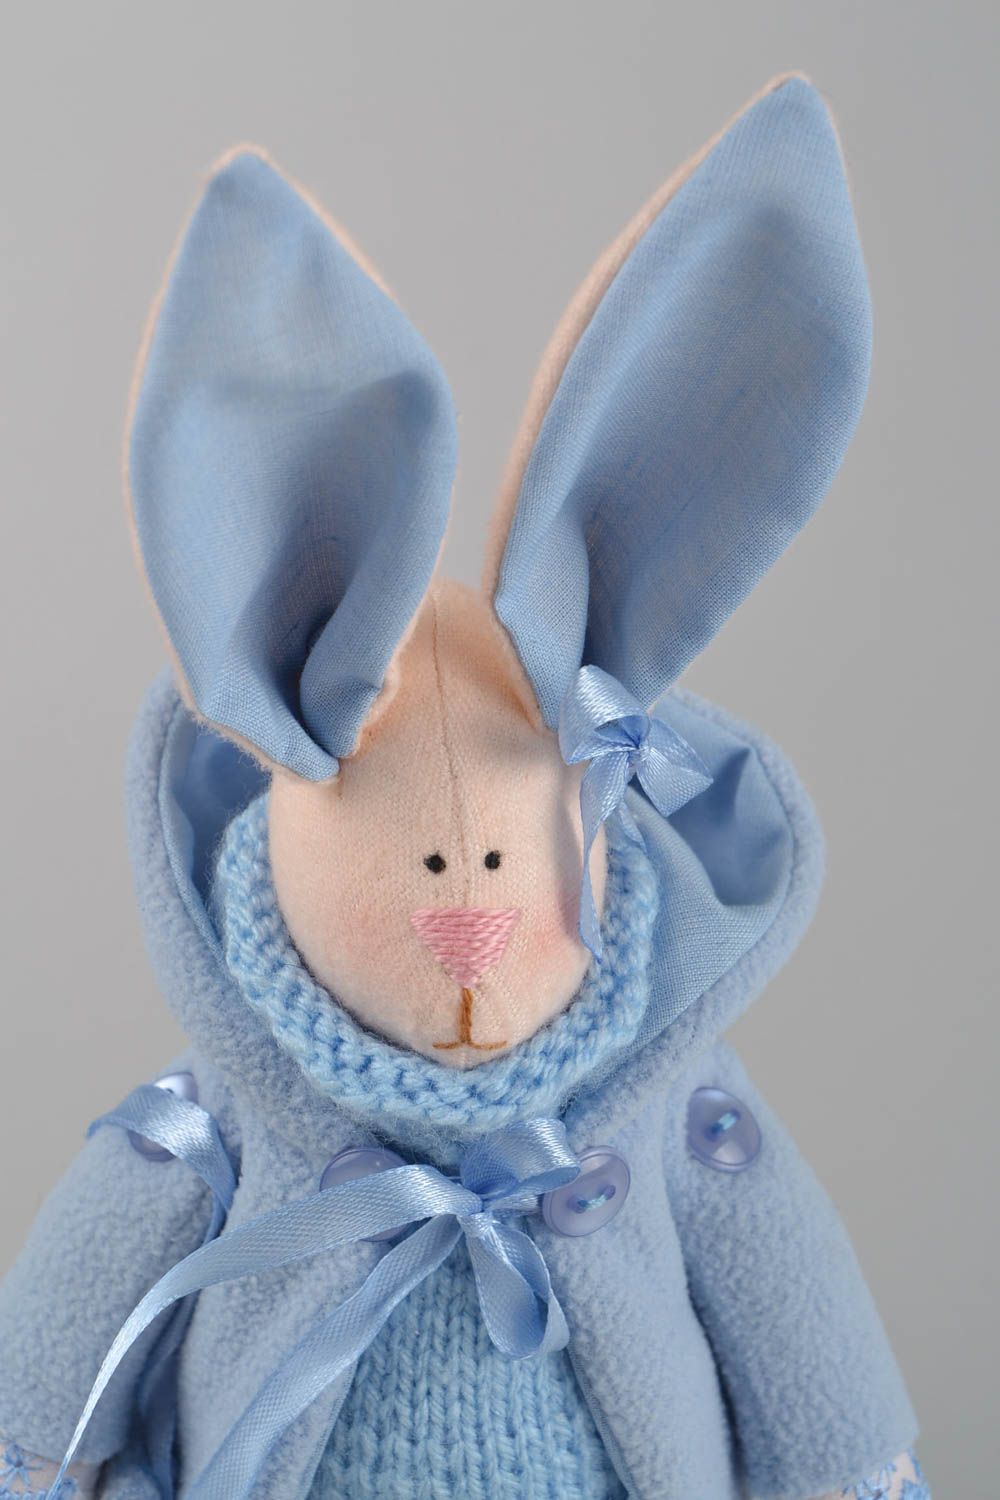 Textil Kuscheltier Hase im blauen Anzug handmade Schmuck für Haus Dekor  foto 4